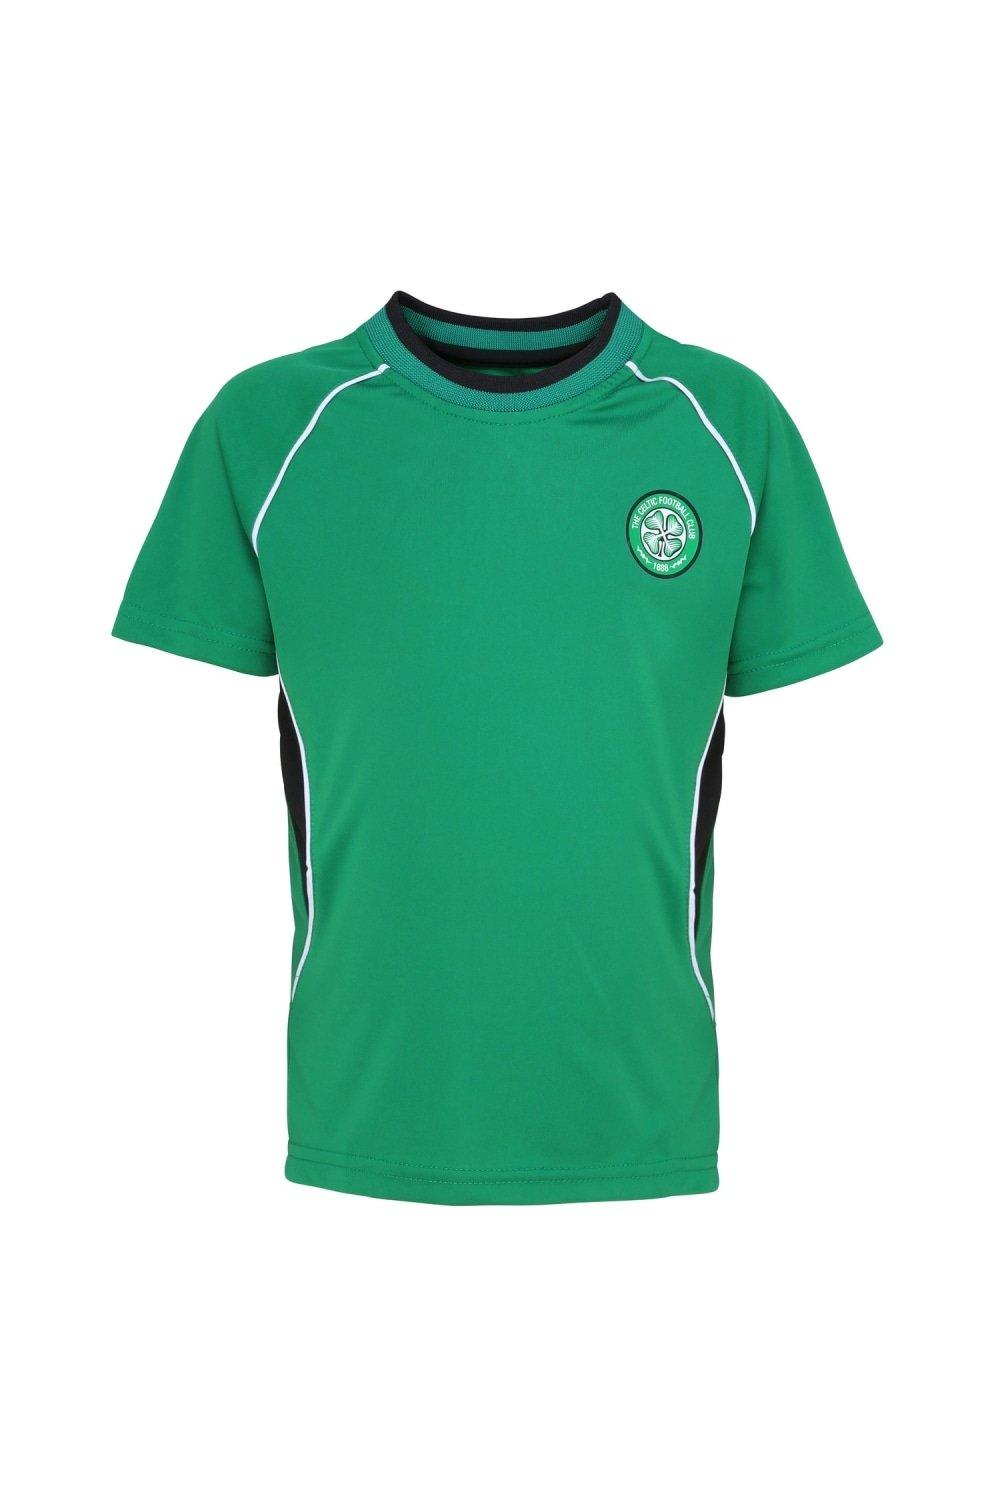 Official Football Merchandise Short Sleeve T-Shirt